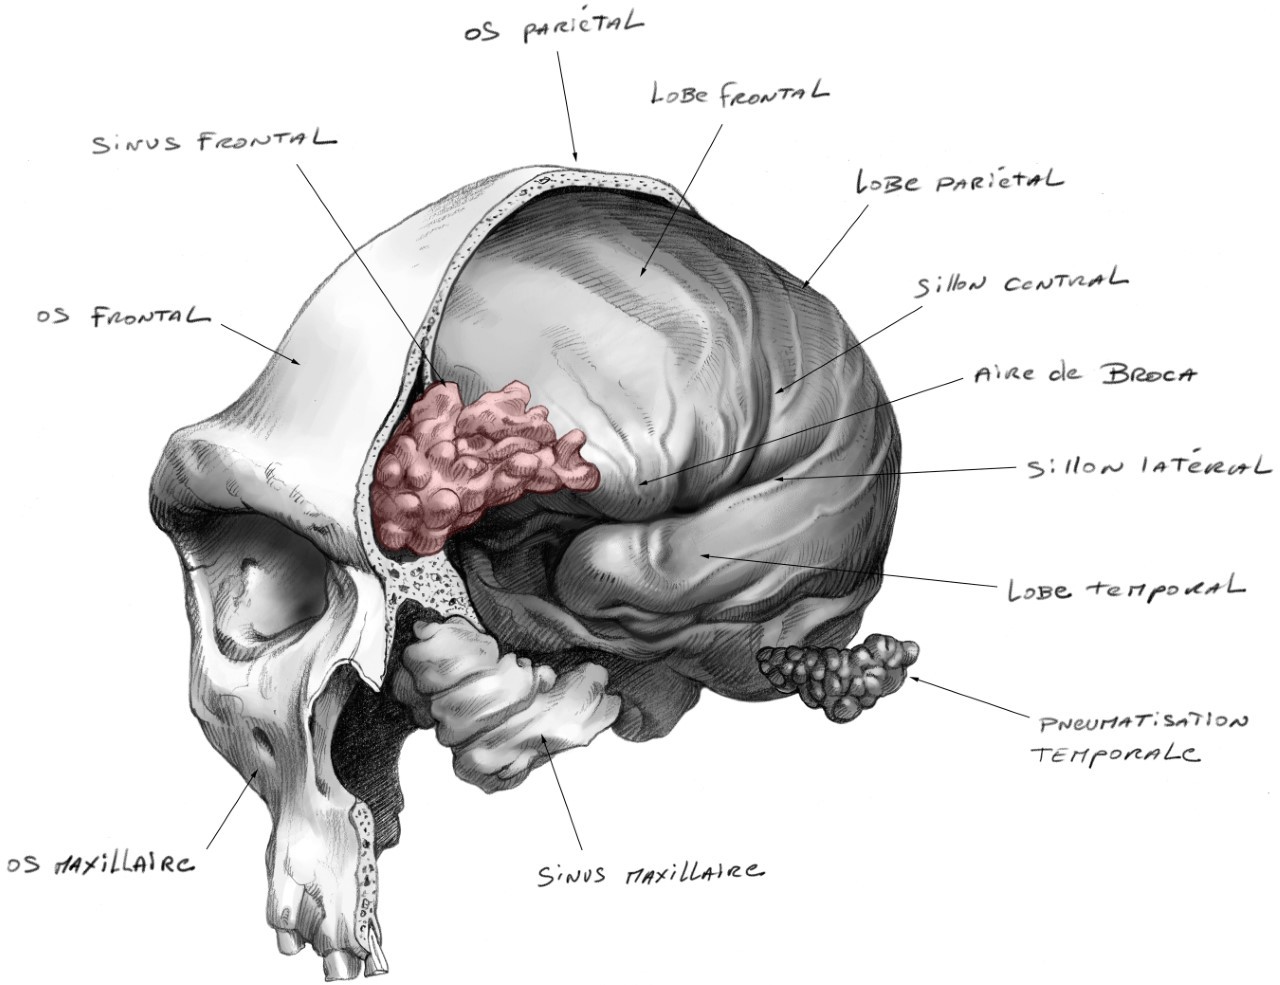 Ilustración de un cráneo humano fósil cortado por la mitad para mostrar todas las estructuras anatómicas internas, incluidos los senos frontales en rojo.